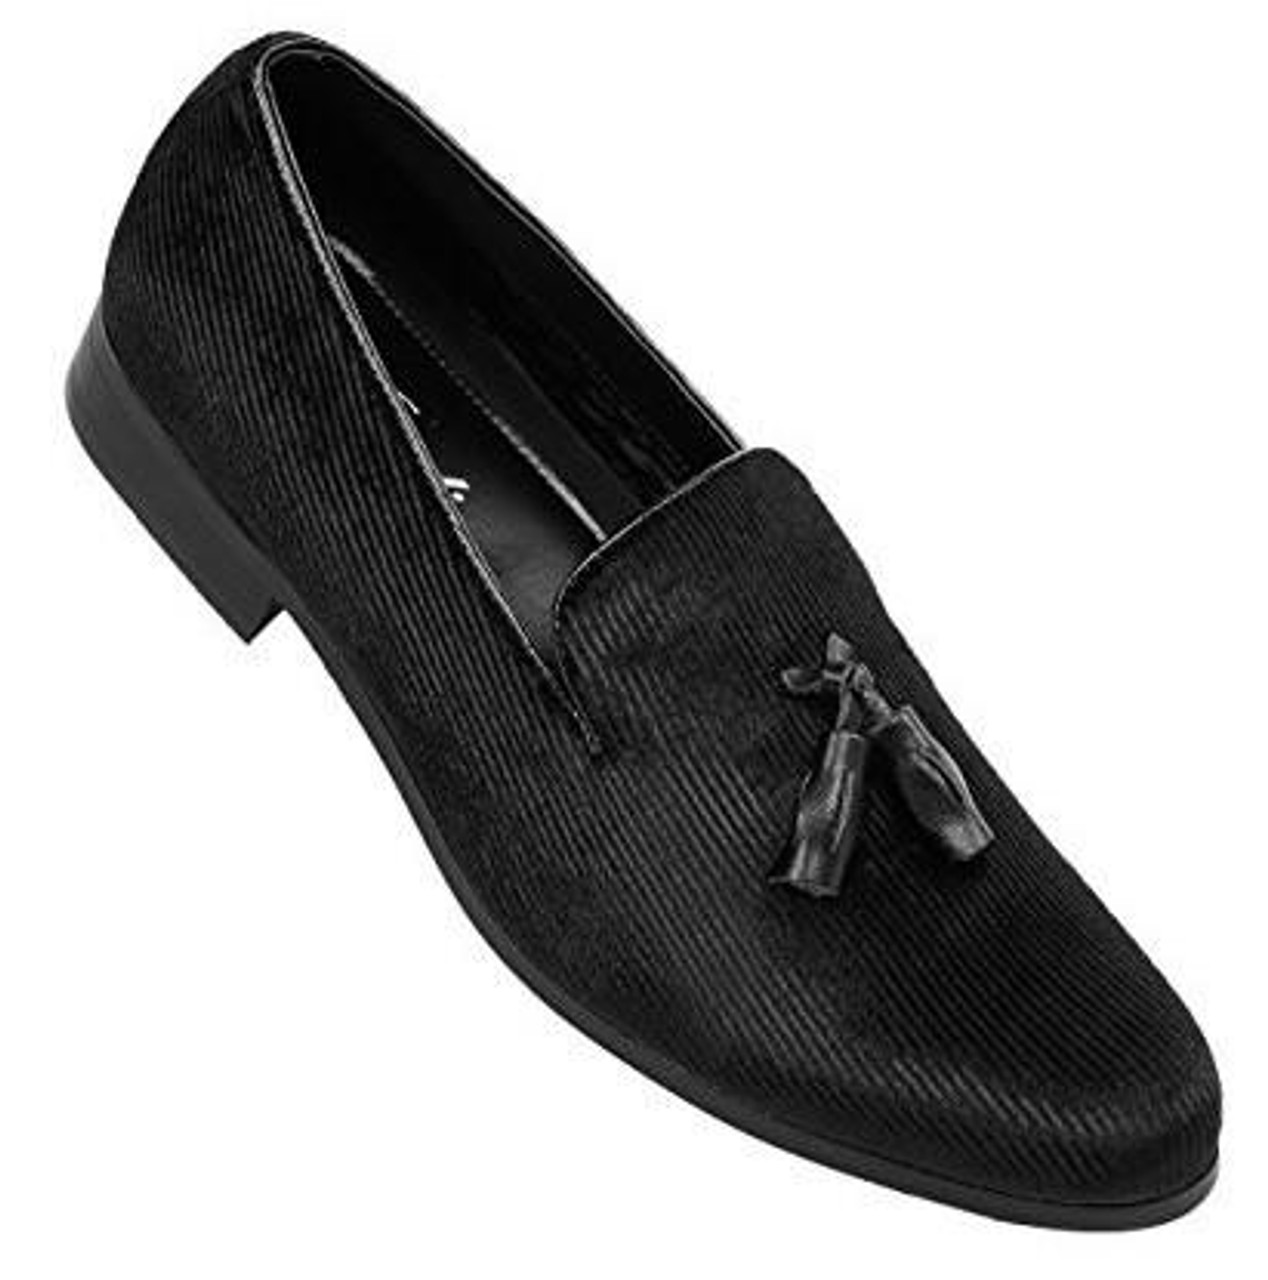 Amali Mens Black Velvet Tuxedo Smoking Loafer Shoes Abrams, Size 10 M,  10.5 M Amali Mens Black Velvet Tuxedo Smoking Loafer Shoes Abrams